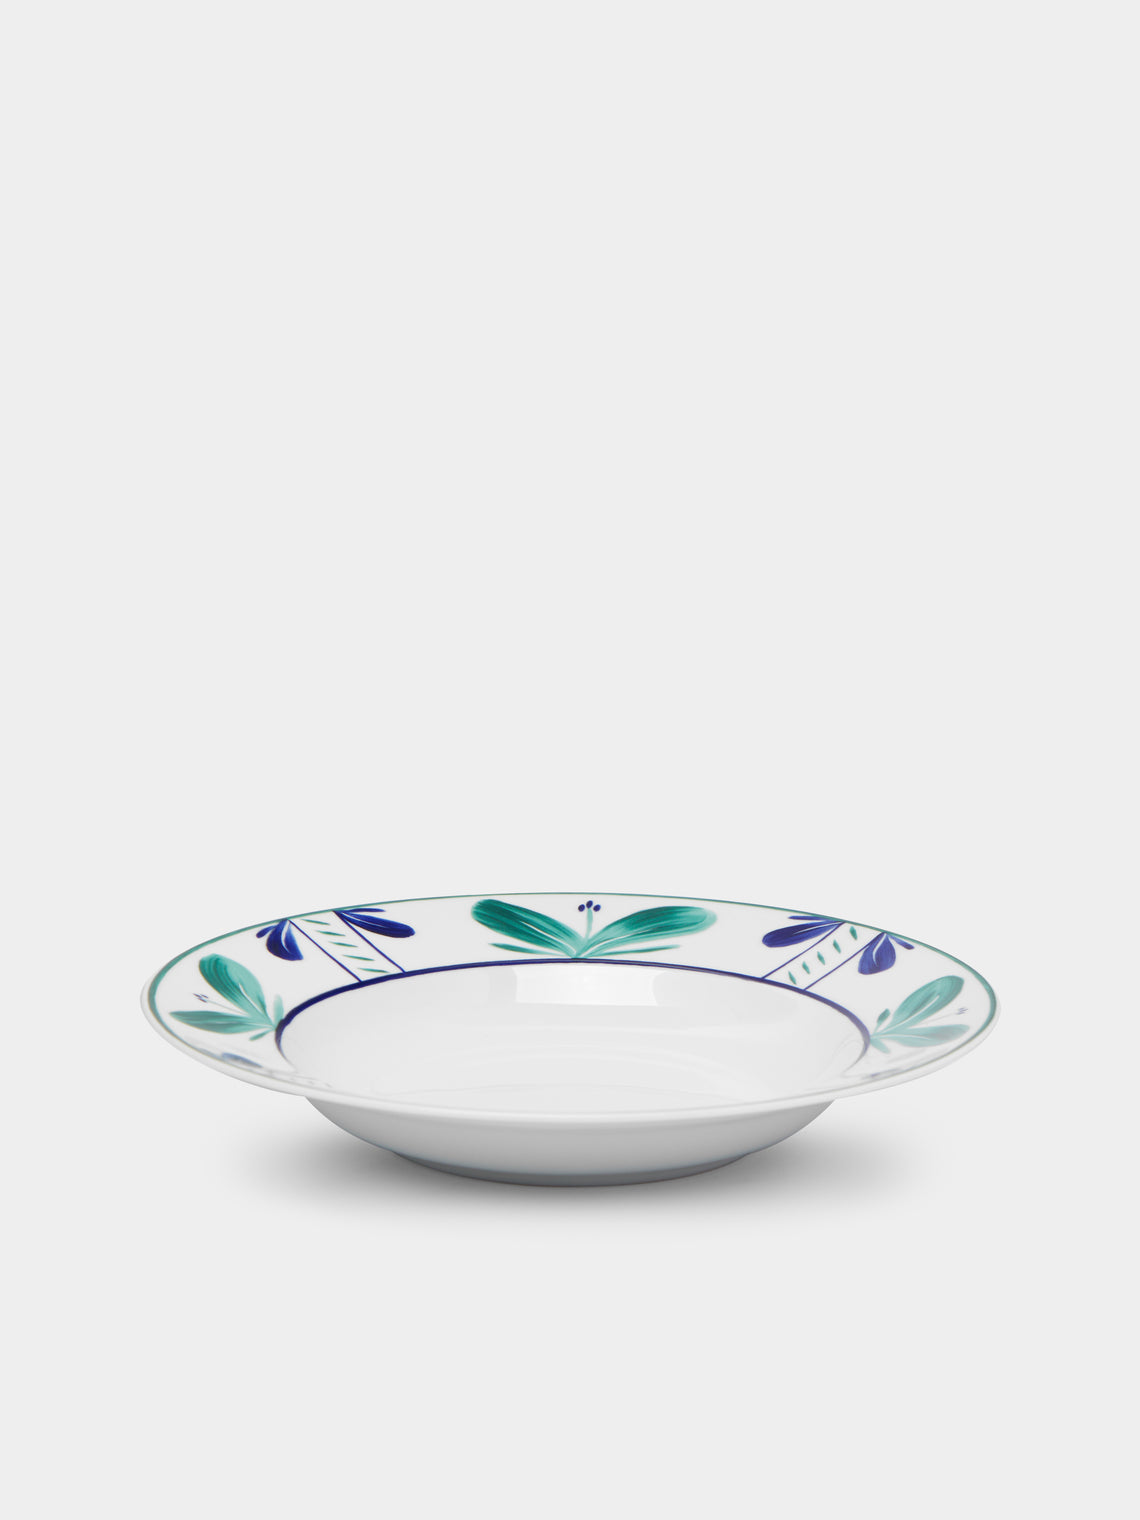 Molecot - Sevilla Porcelain Bowls (Set of 4) -  - ABASK